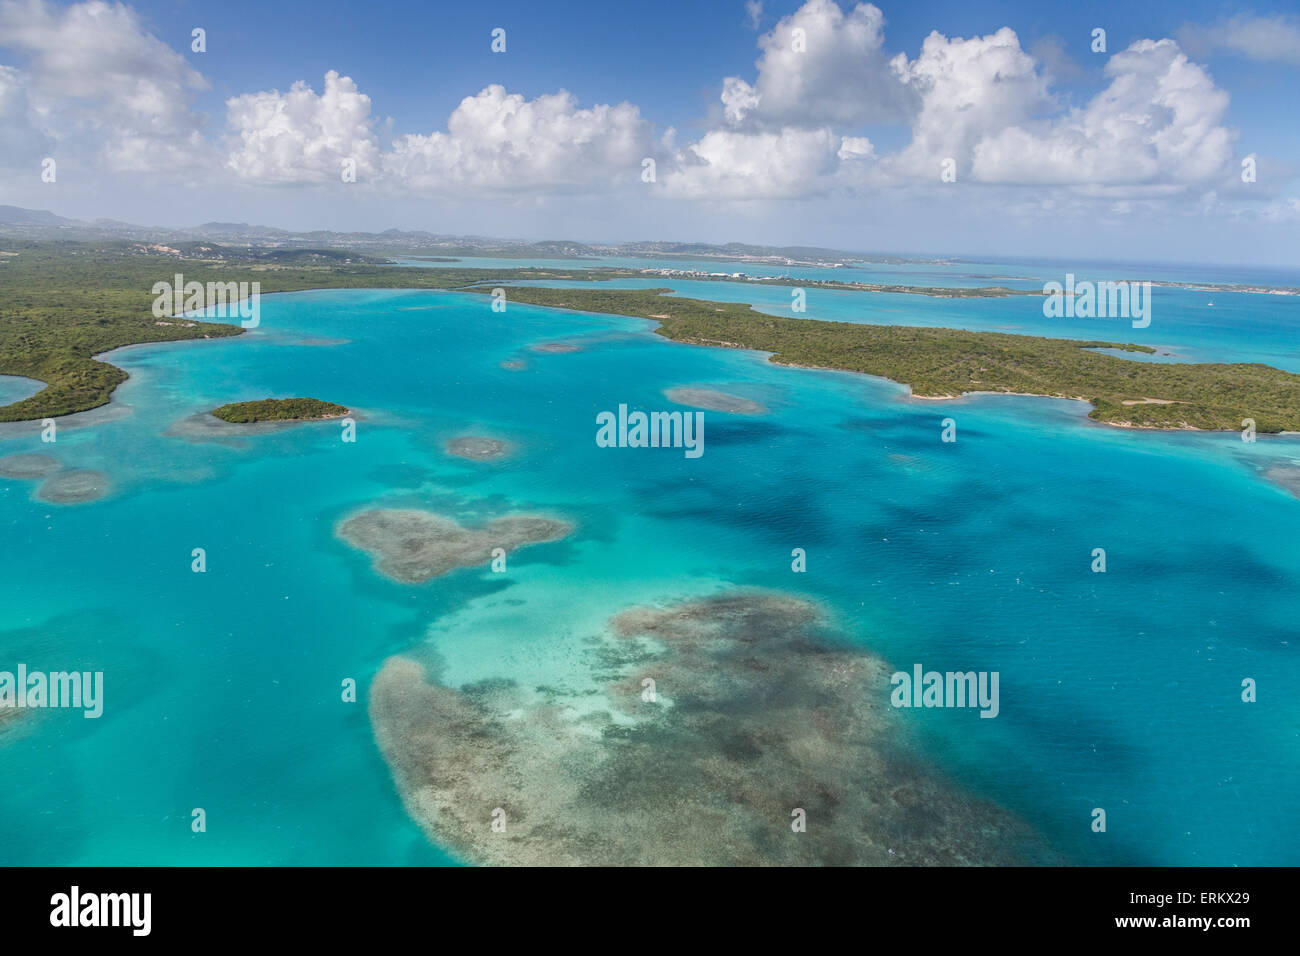 Vue aérienne de sections de corail dispersés le long de la côte sauvage et riche végétation tropicale de Antigua, Iles sous le vent Banque D'Images